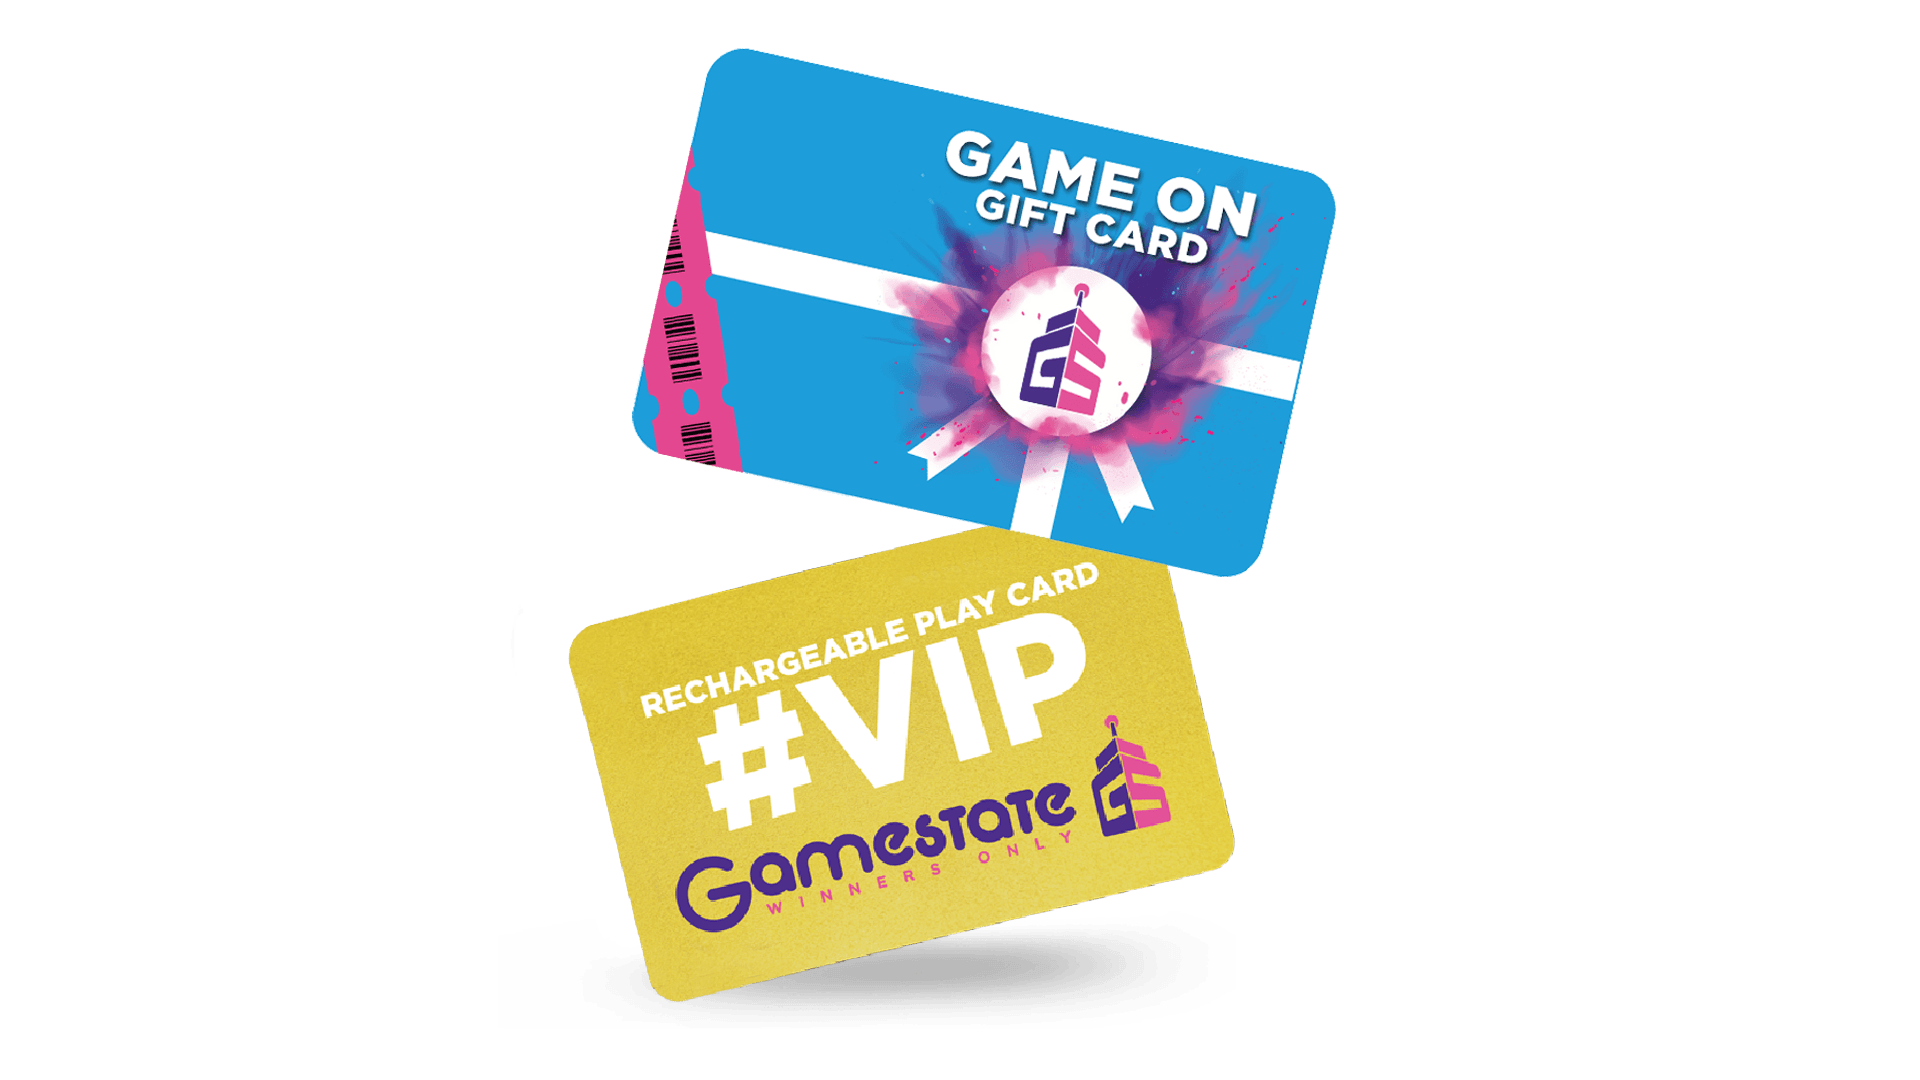 600 CREDIT GIFTCARD #VIP - GameStateStore